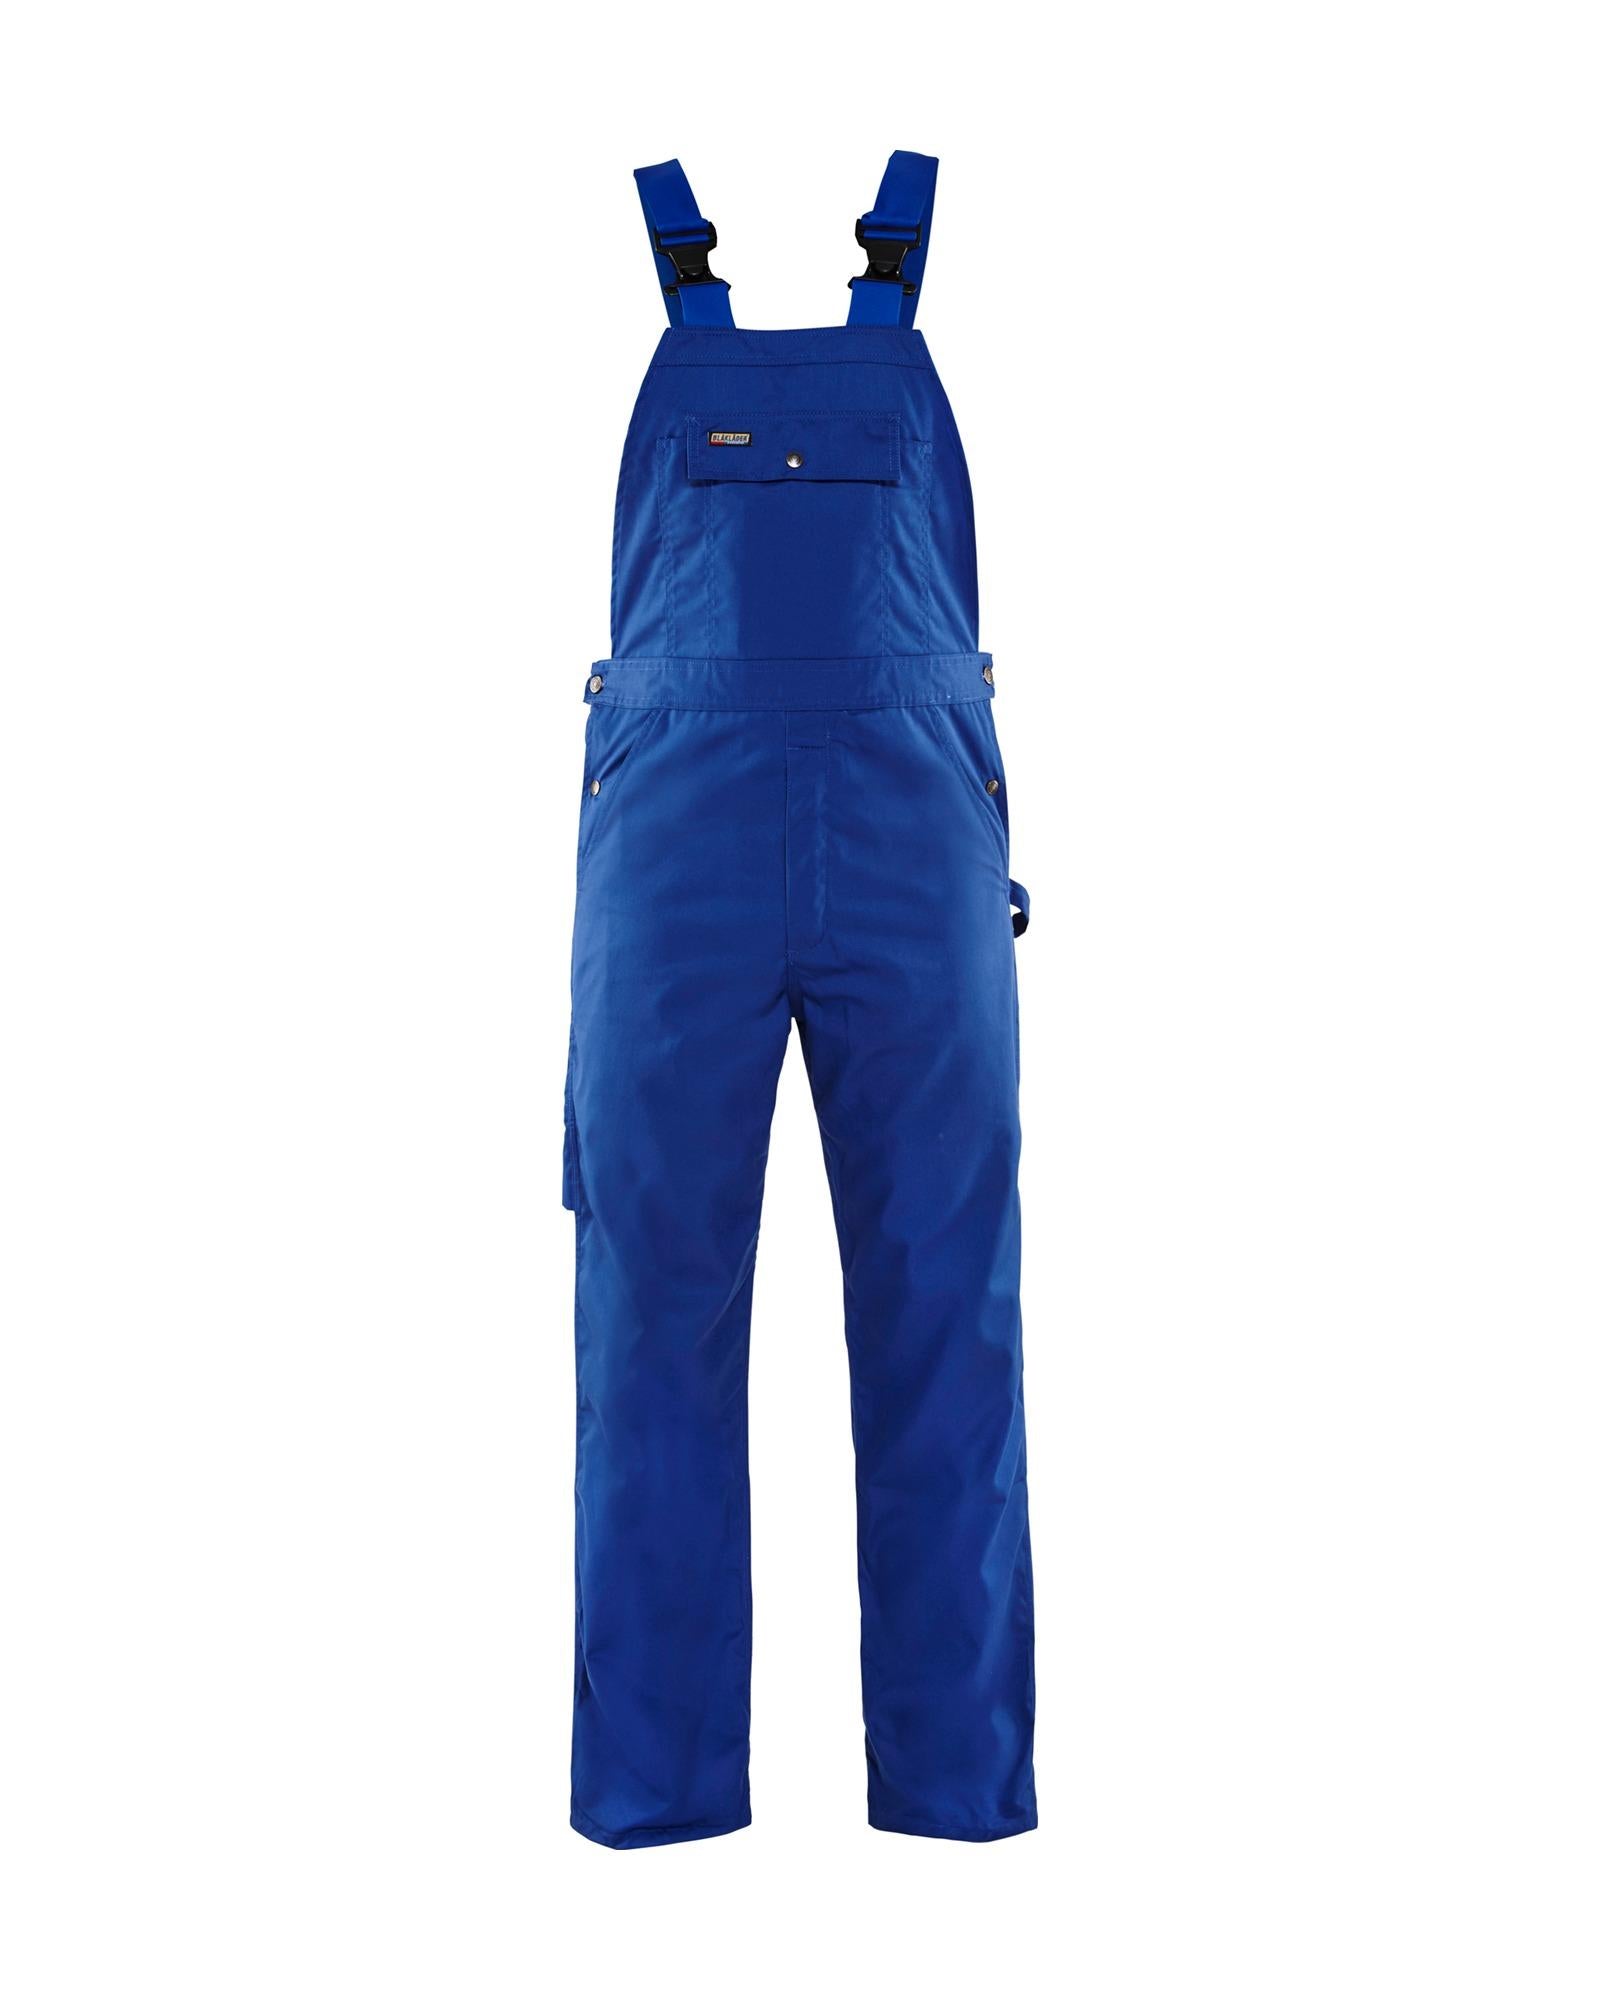 Blaklader cornflower blue polycotton work bib and brace overalls #2610